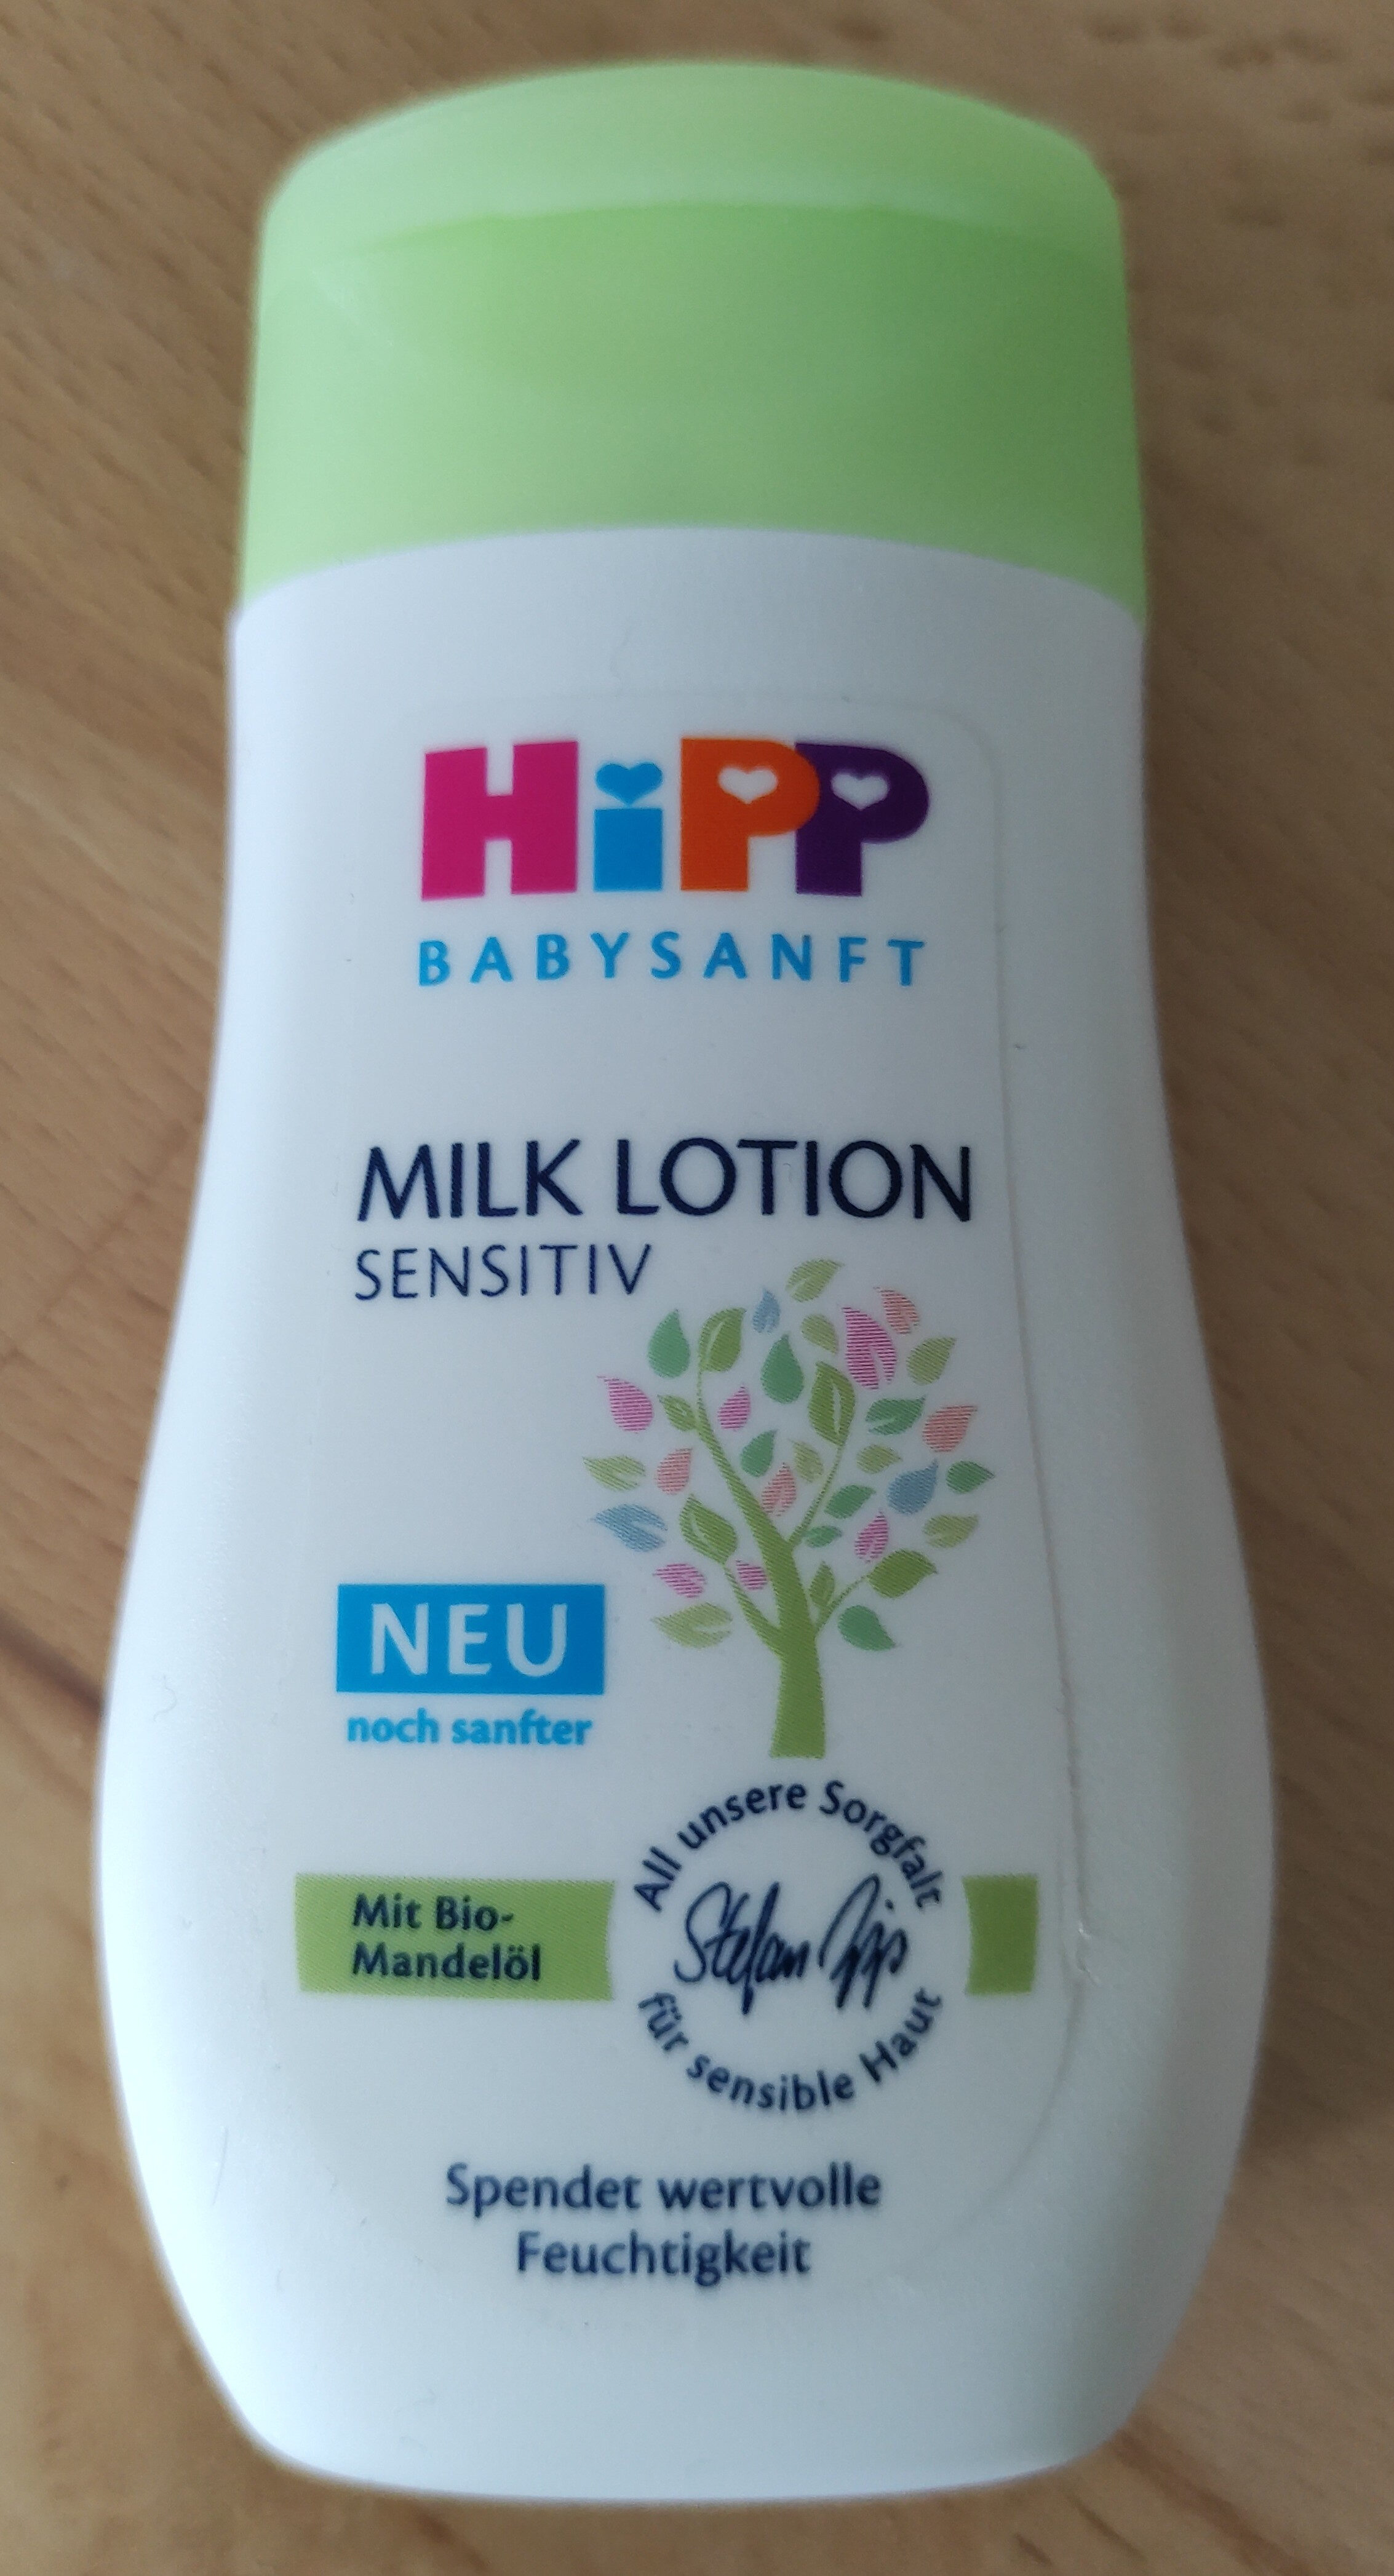 Milk Lotion Sensitiv - Produit - de